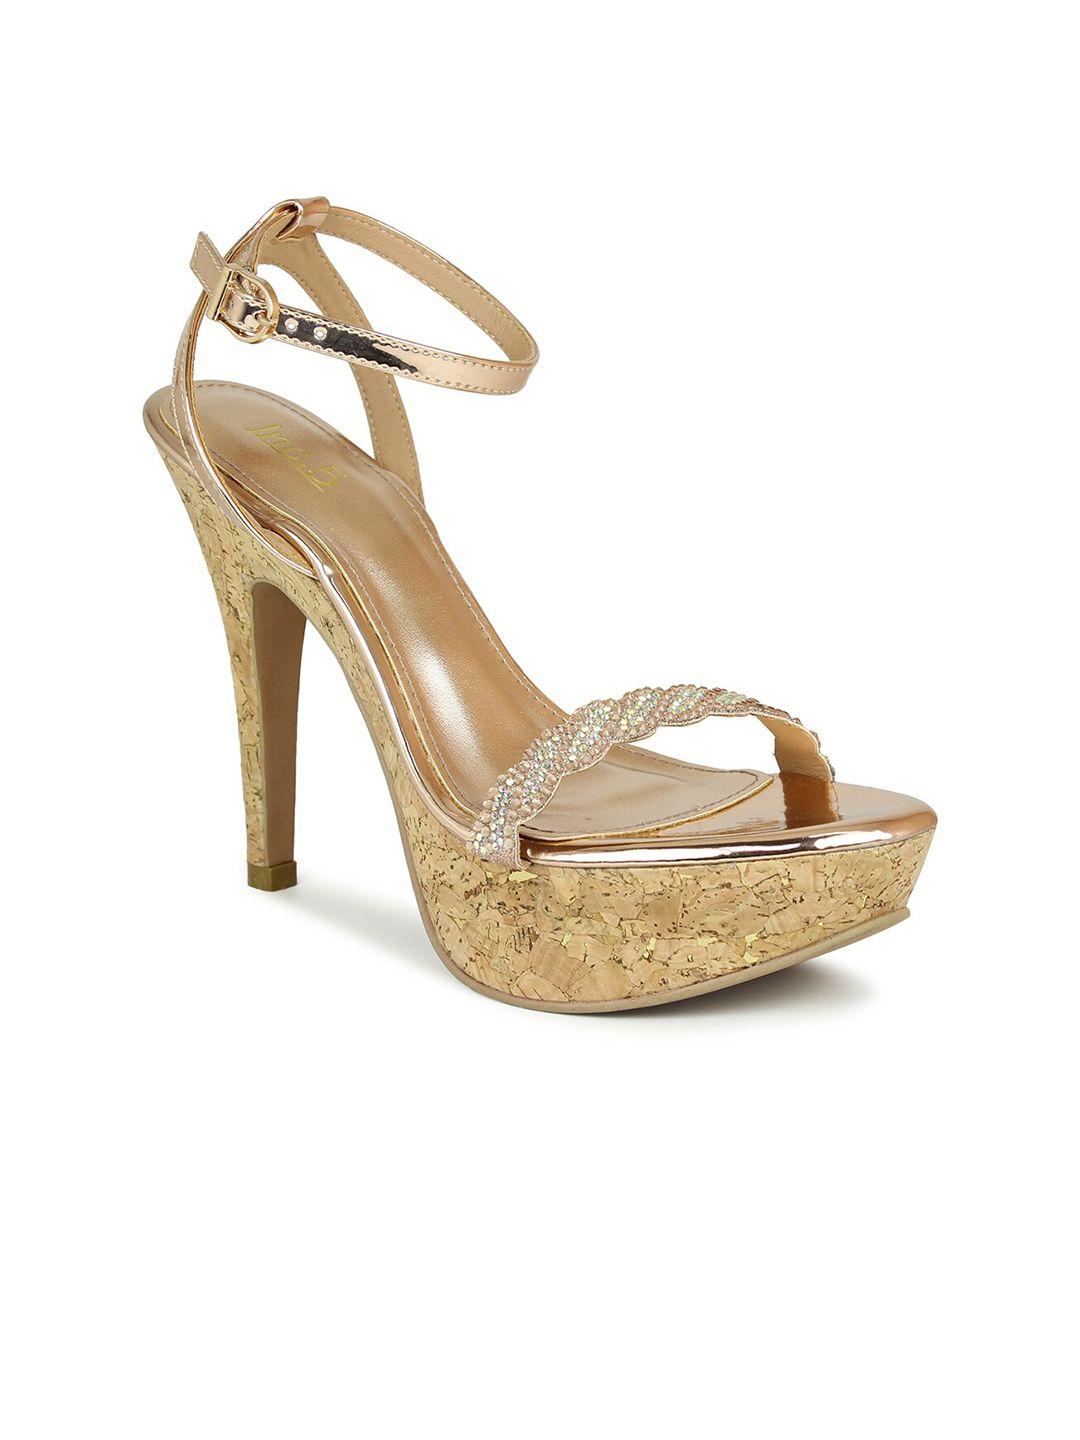 inc 5 women copper-toned & gold-toned comfort sandals